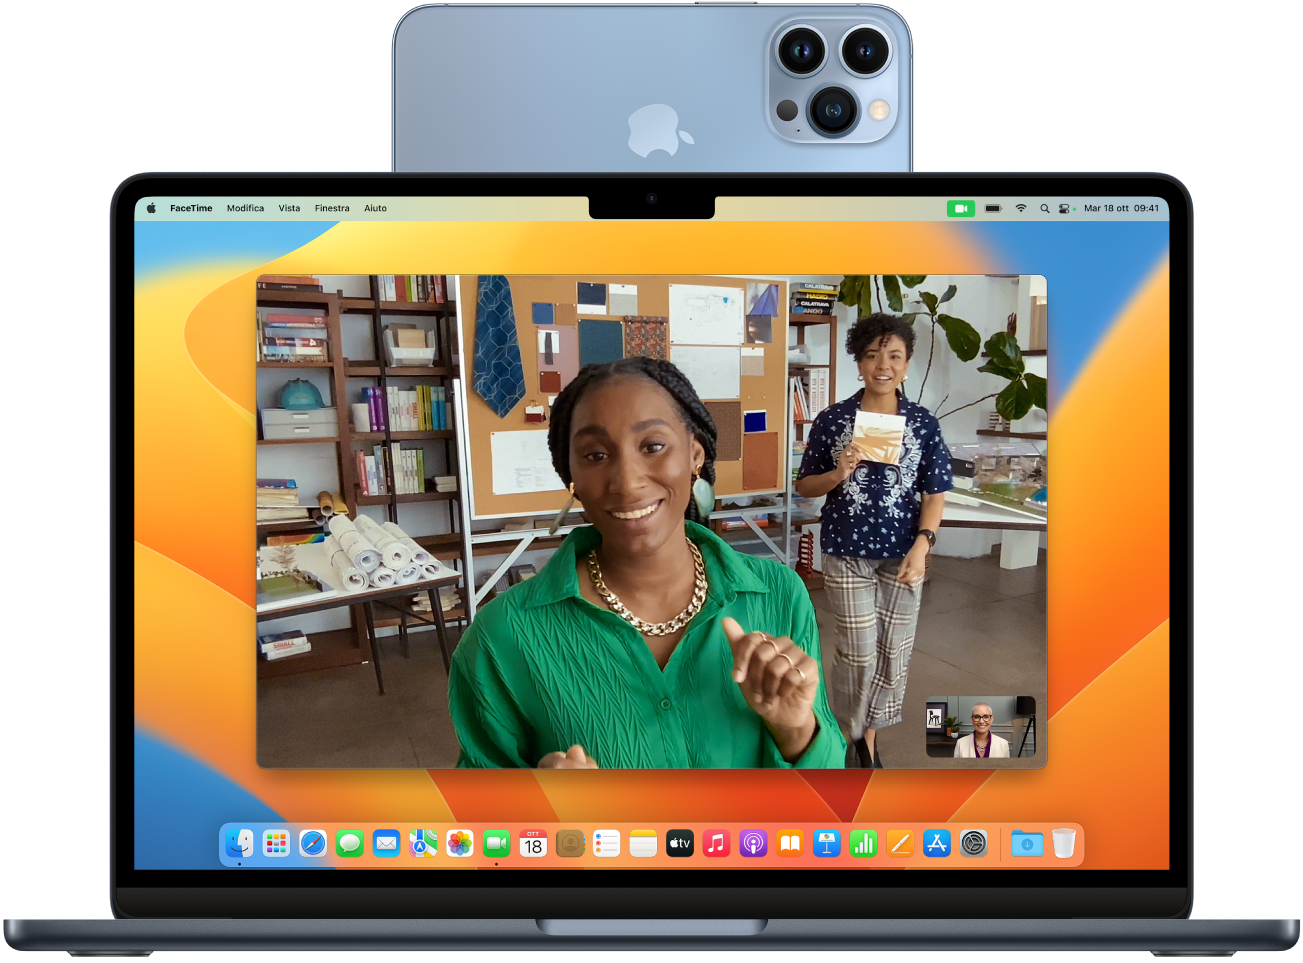 Un Mac con un iPhone che viene utilizzato come webcam posizionato sopra lo schermo. L'immagine ripresa dalla fotocamera di iPhone viene mostrata sullo schermo del Mac.